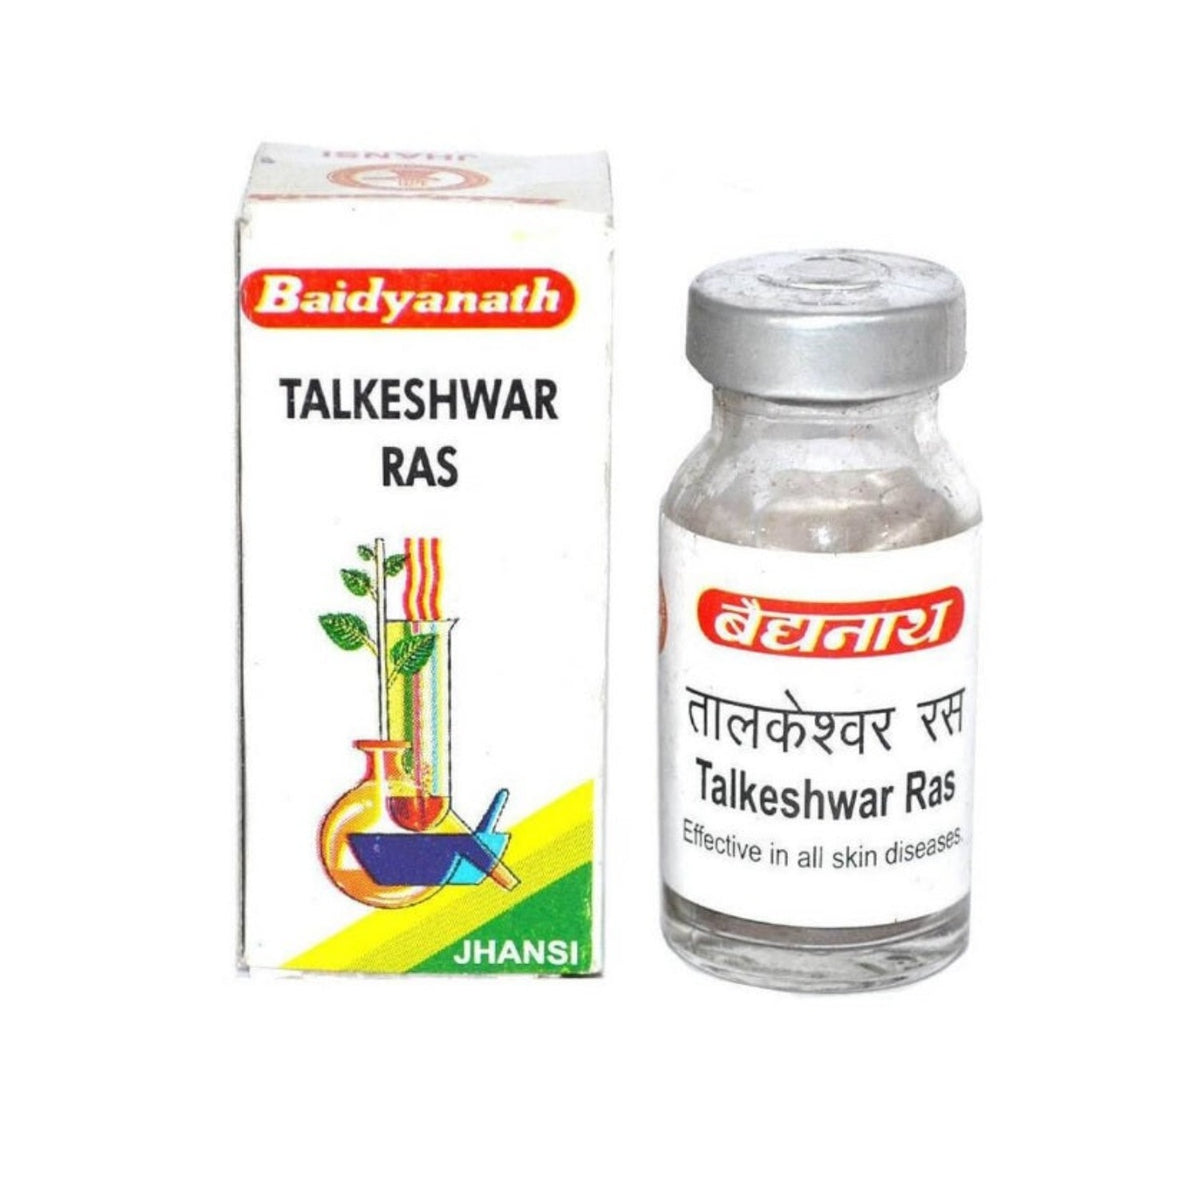 Baidyanath Ayurvedisches (Jhansi) Talkeshwar Ras-Pulver 5 g